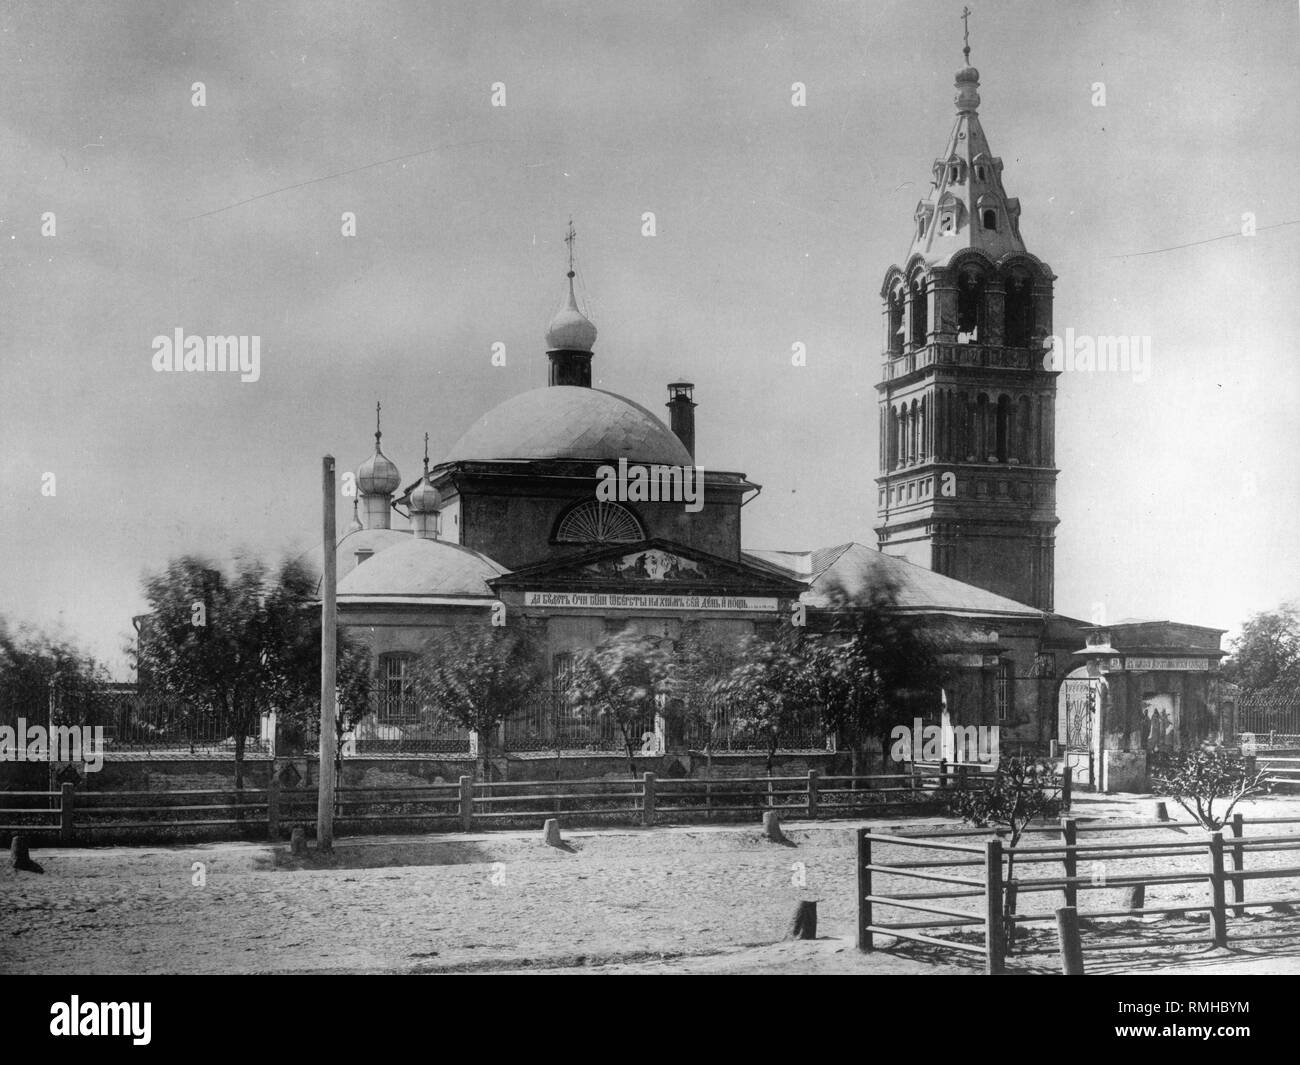 The Epiphany Church at Dorogomilovo in Moscow. Albumin Photo Stock Photo